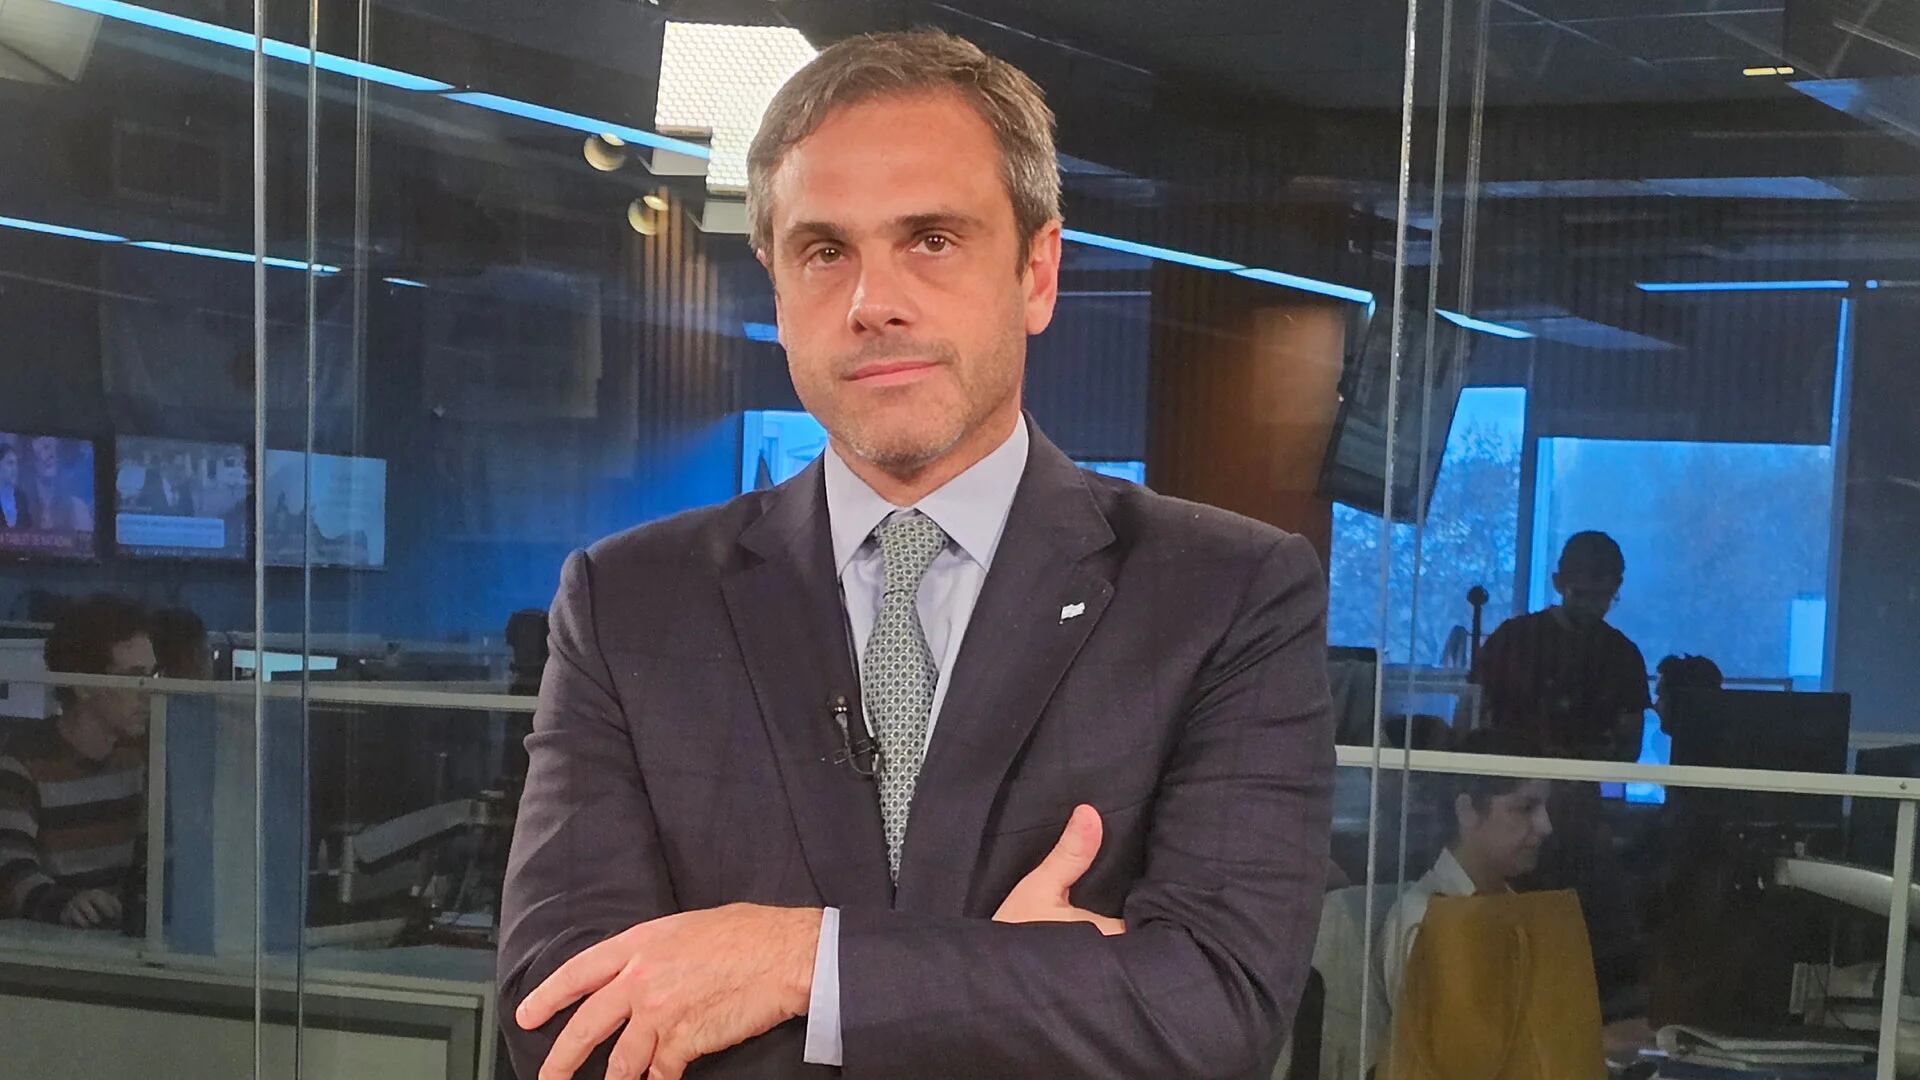 Guillermo Michel, el titular de la Aduana, fue designado por Massa para negociar los acuerdos de precios con empresas